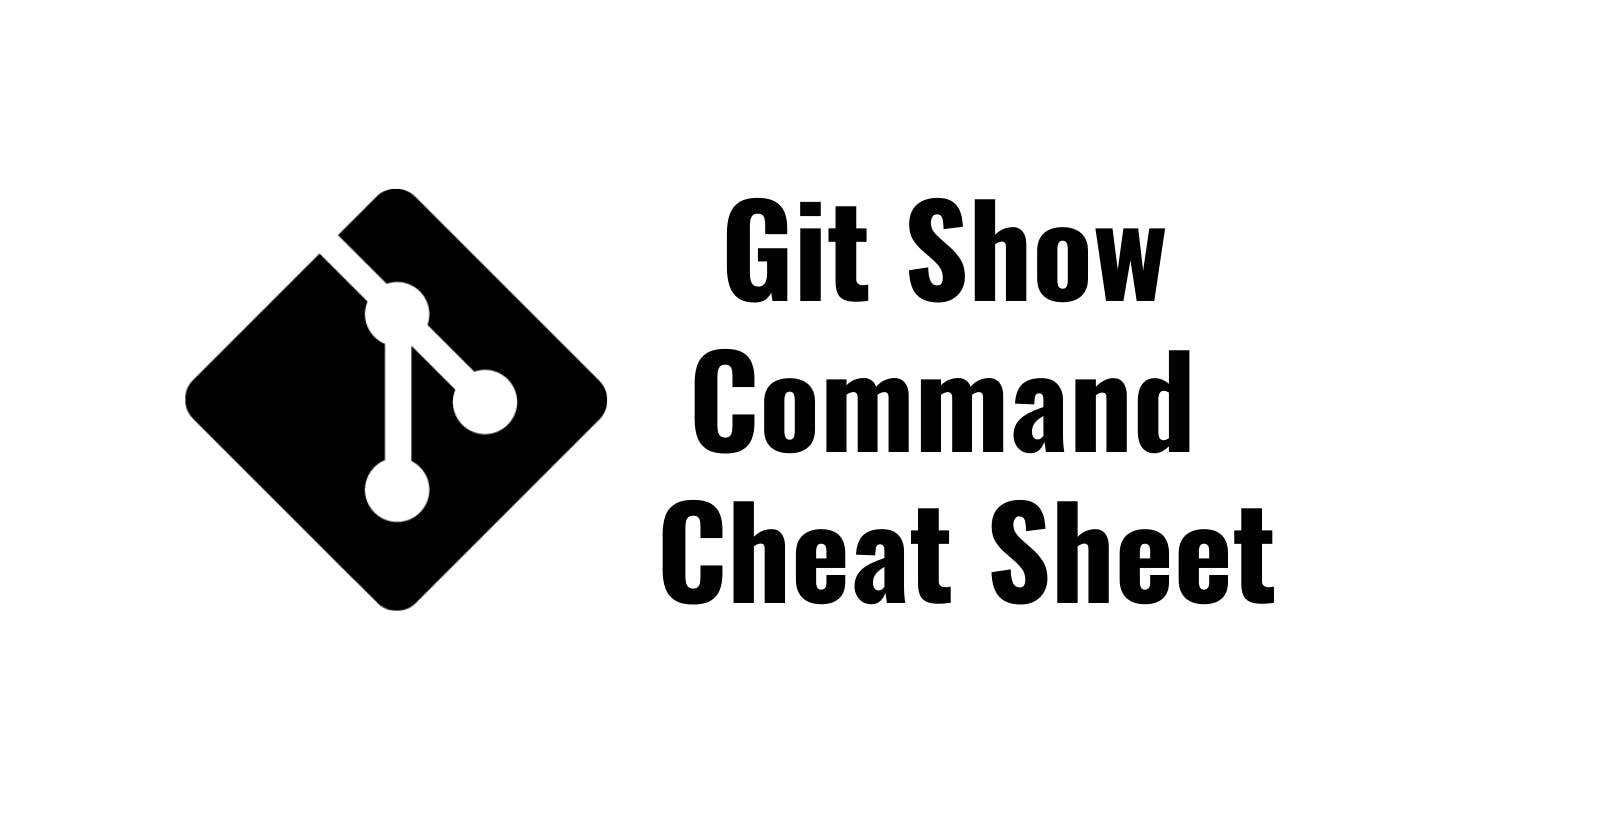 Git Show Command Cheat Sheet